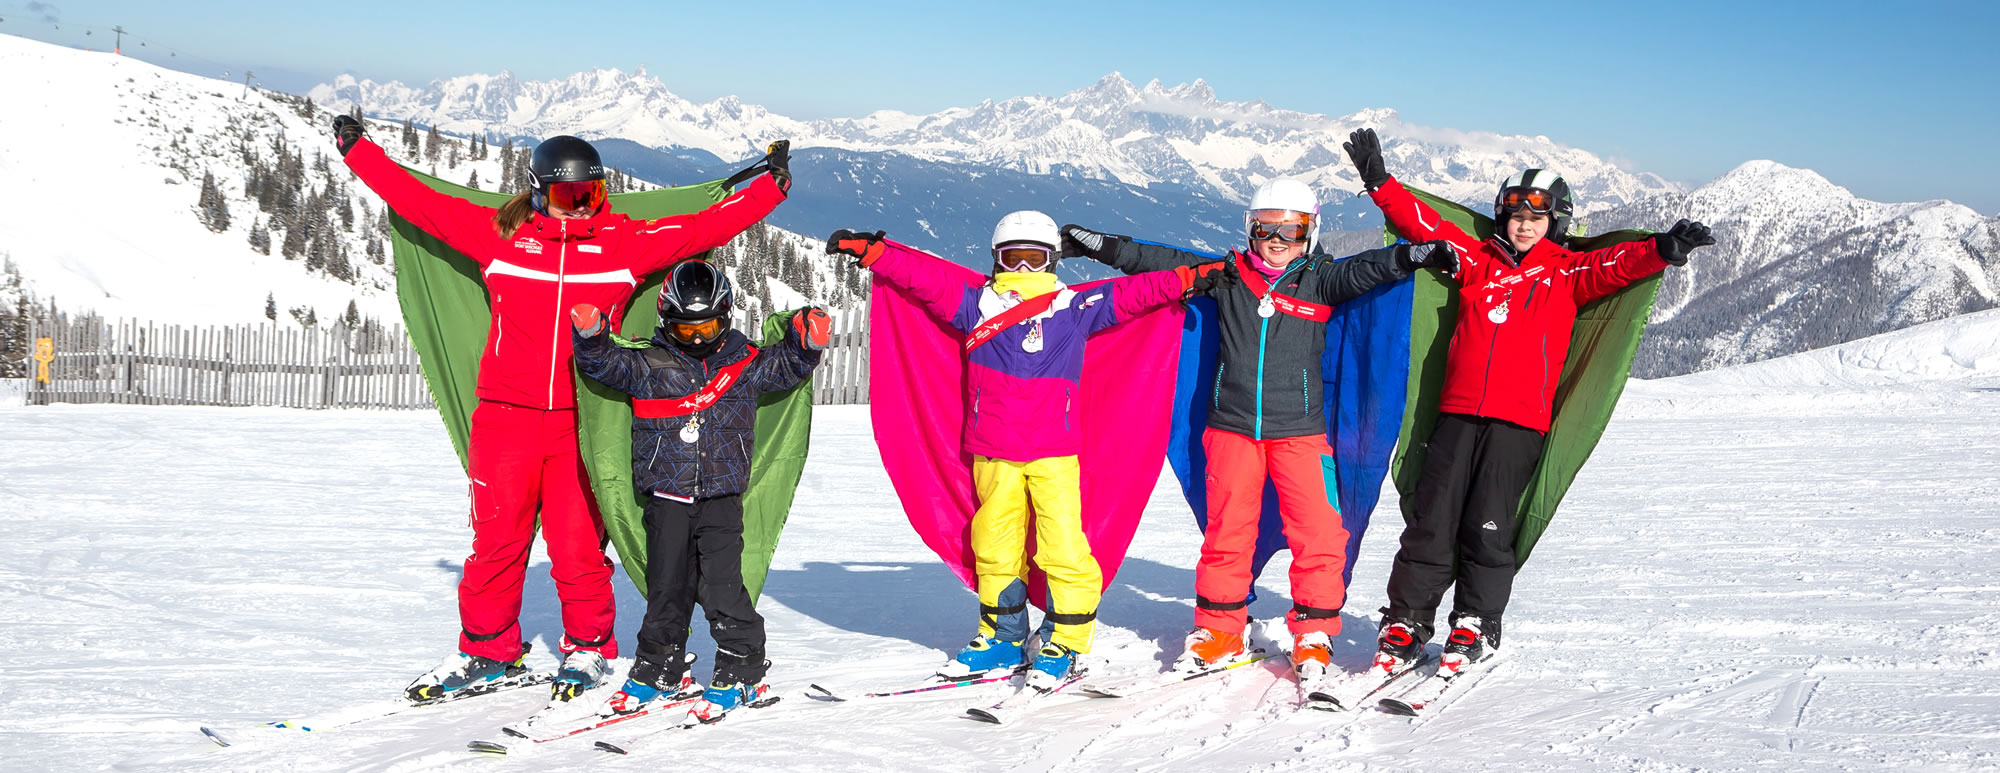 Skikurs im Familien-Skiurlaub in Österreich